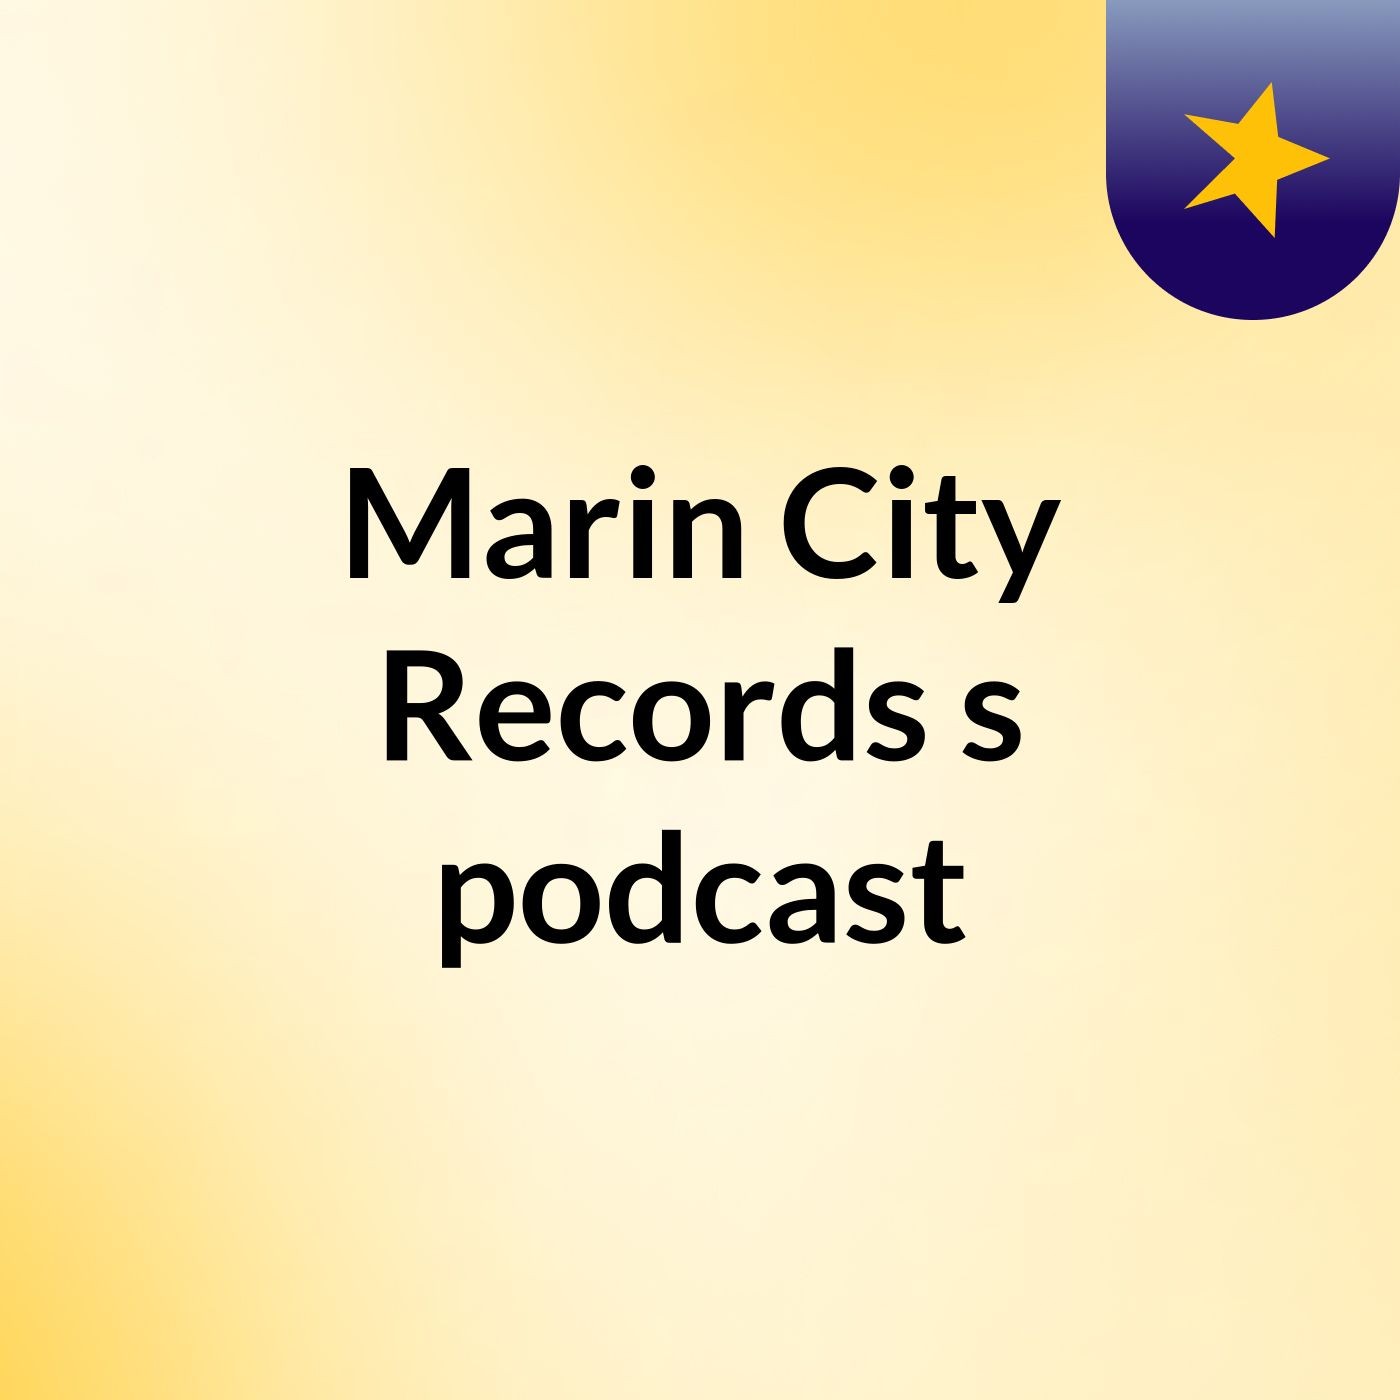 Marin City Records's podcast